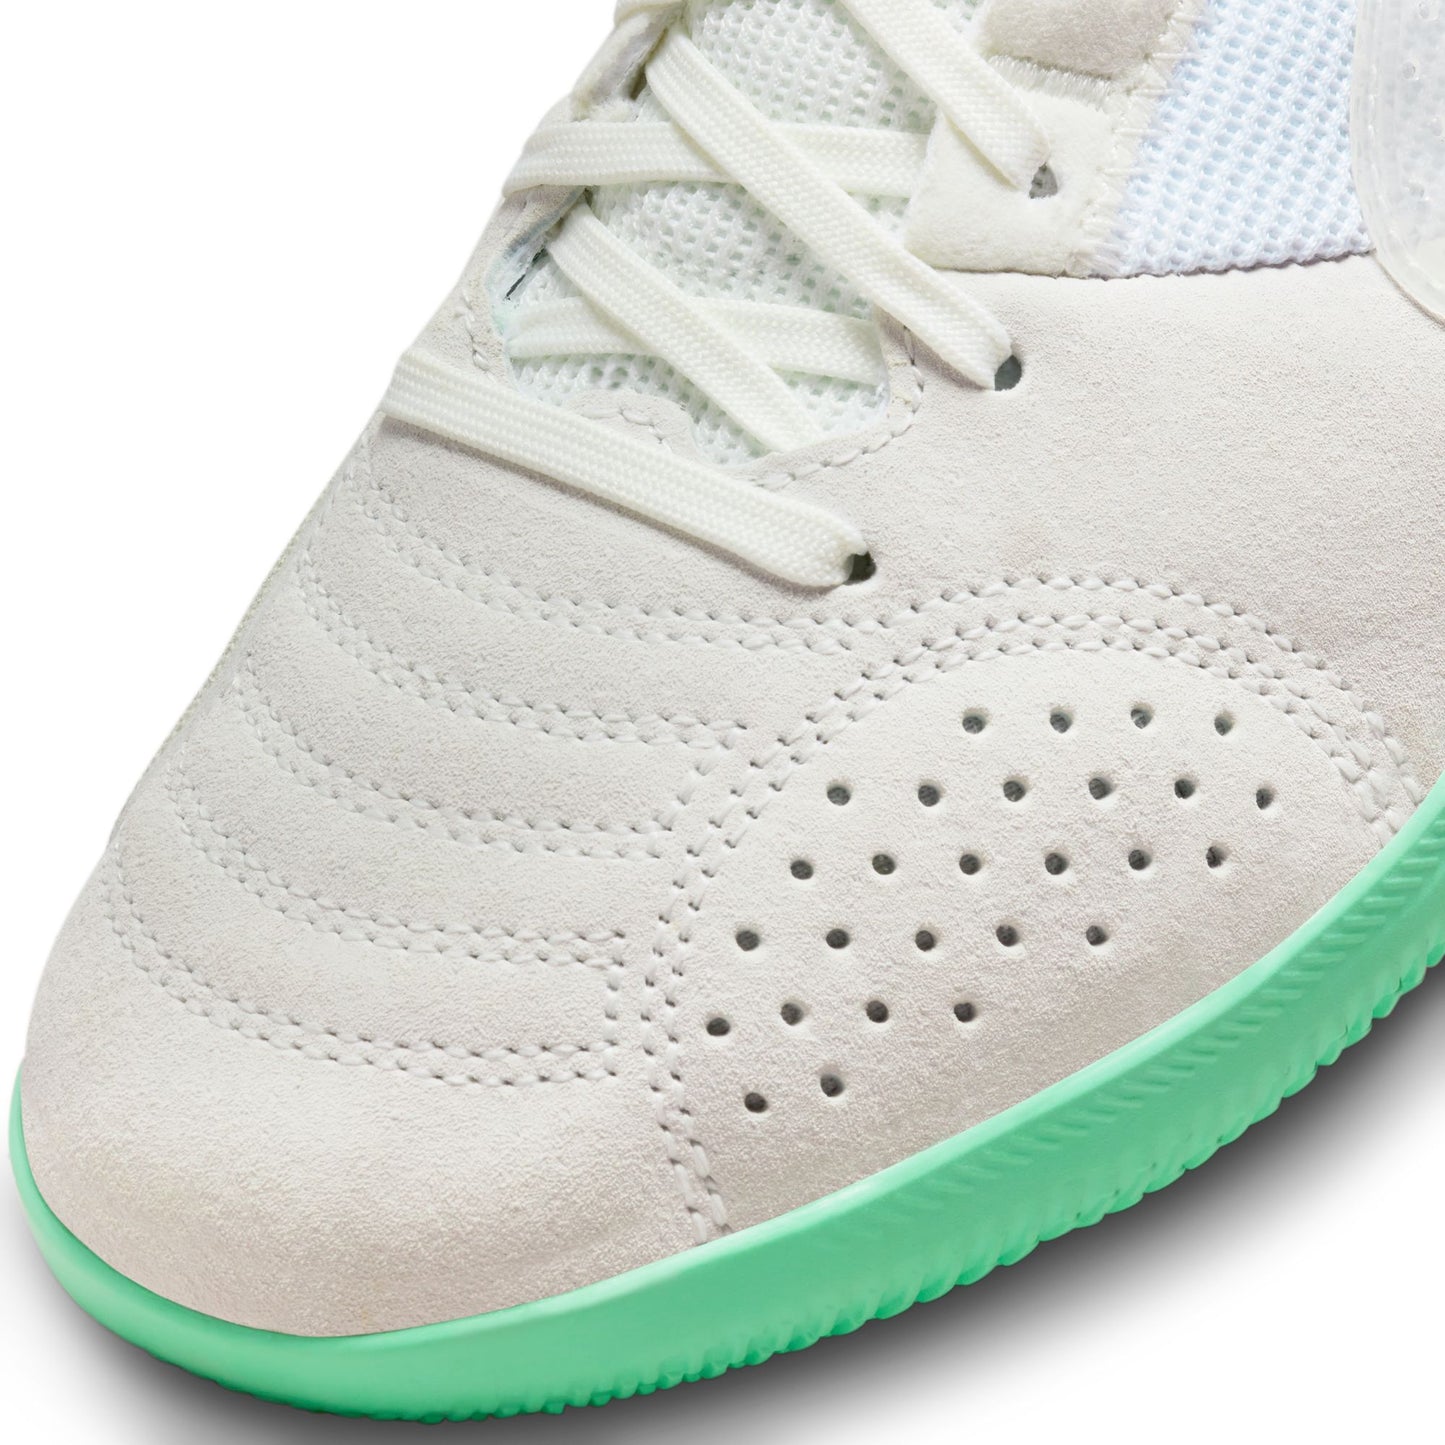 Junior Nike Streetgato IC [Summit White/Green Glow]